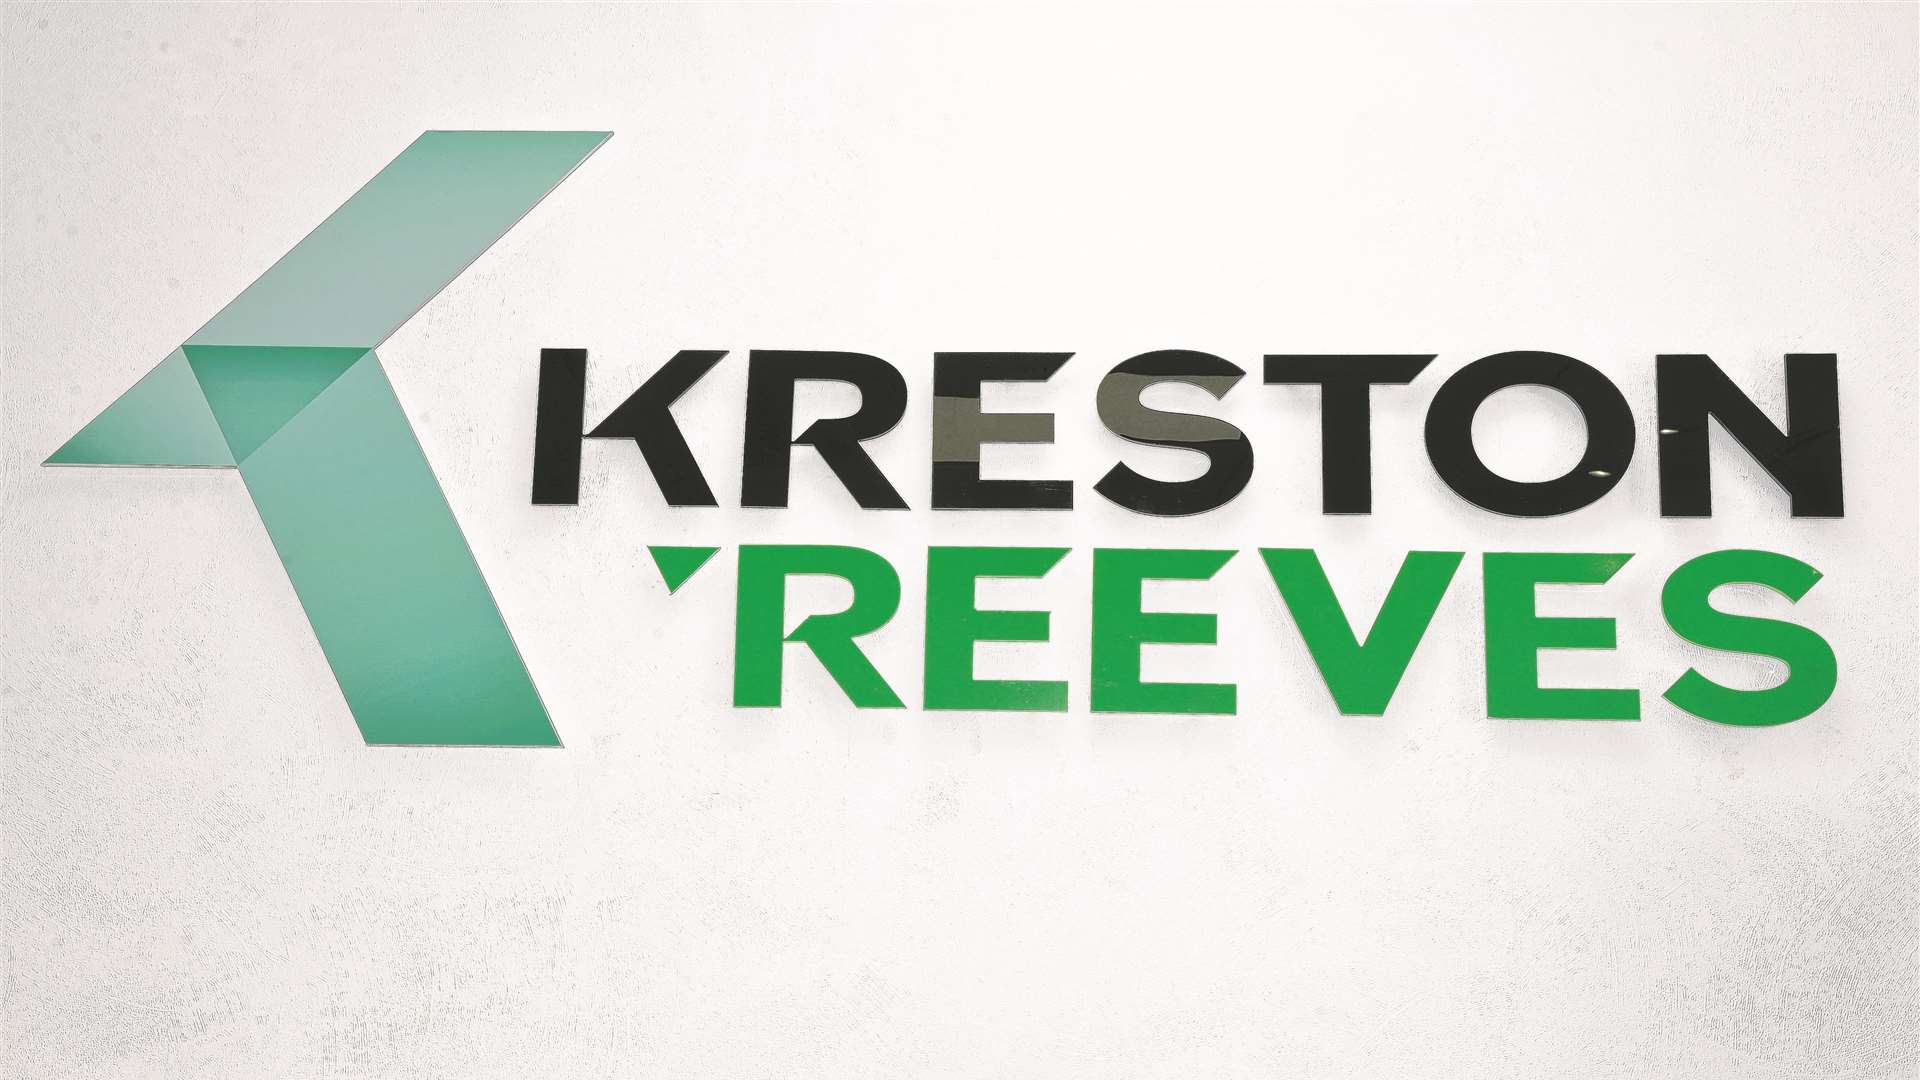 Kreston Reeves has three offices in Kent